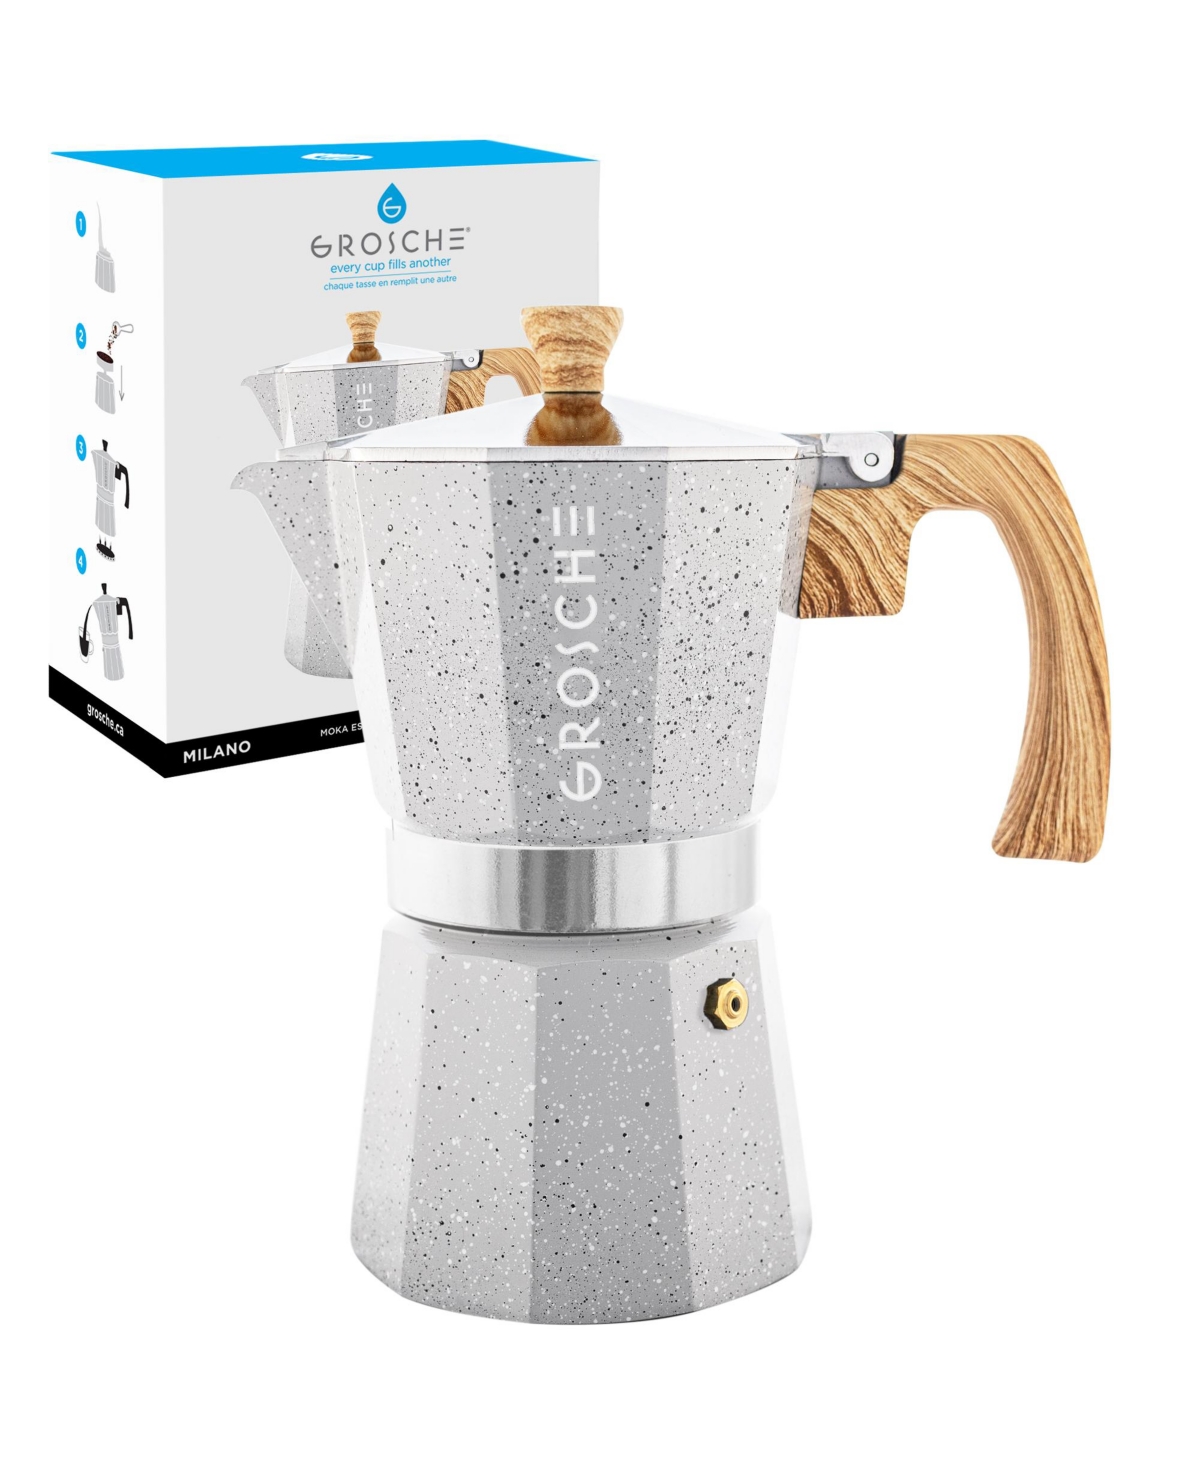 Grosche Milano Stone Stovetop Espresso Maker Moka Pot 6 Cup, 9.3 oz In Fossil Gray